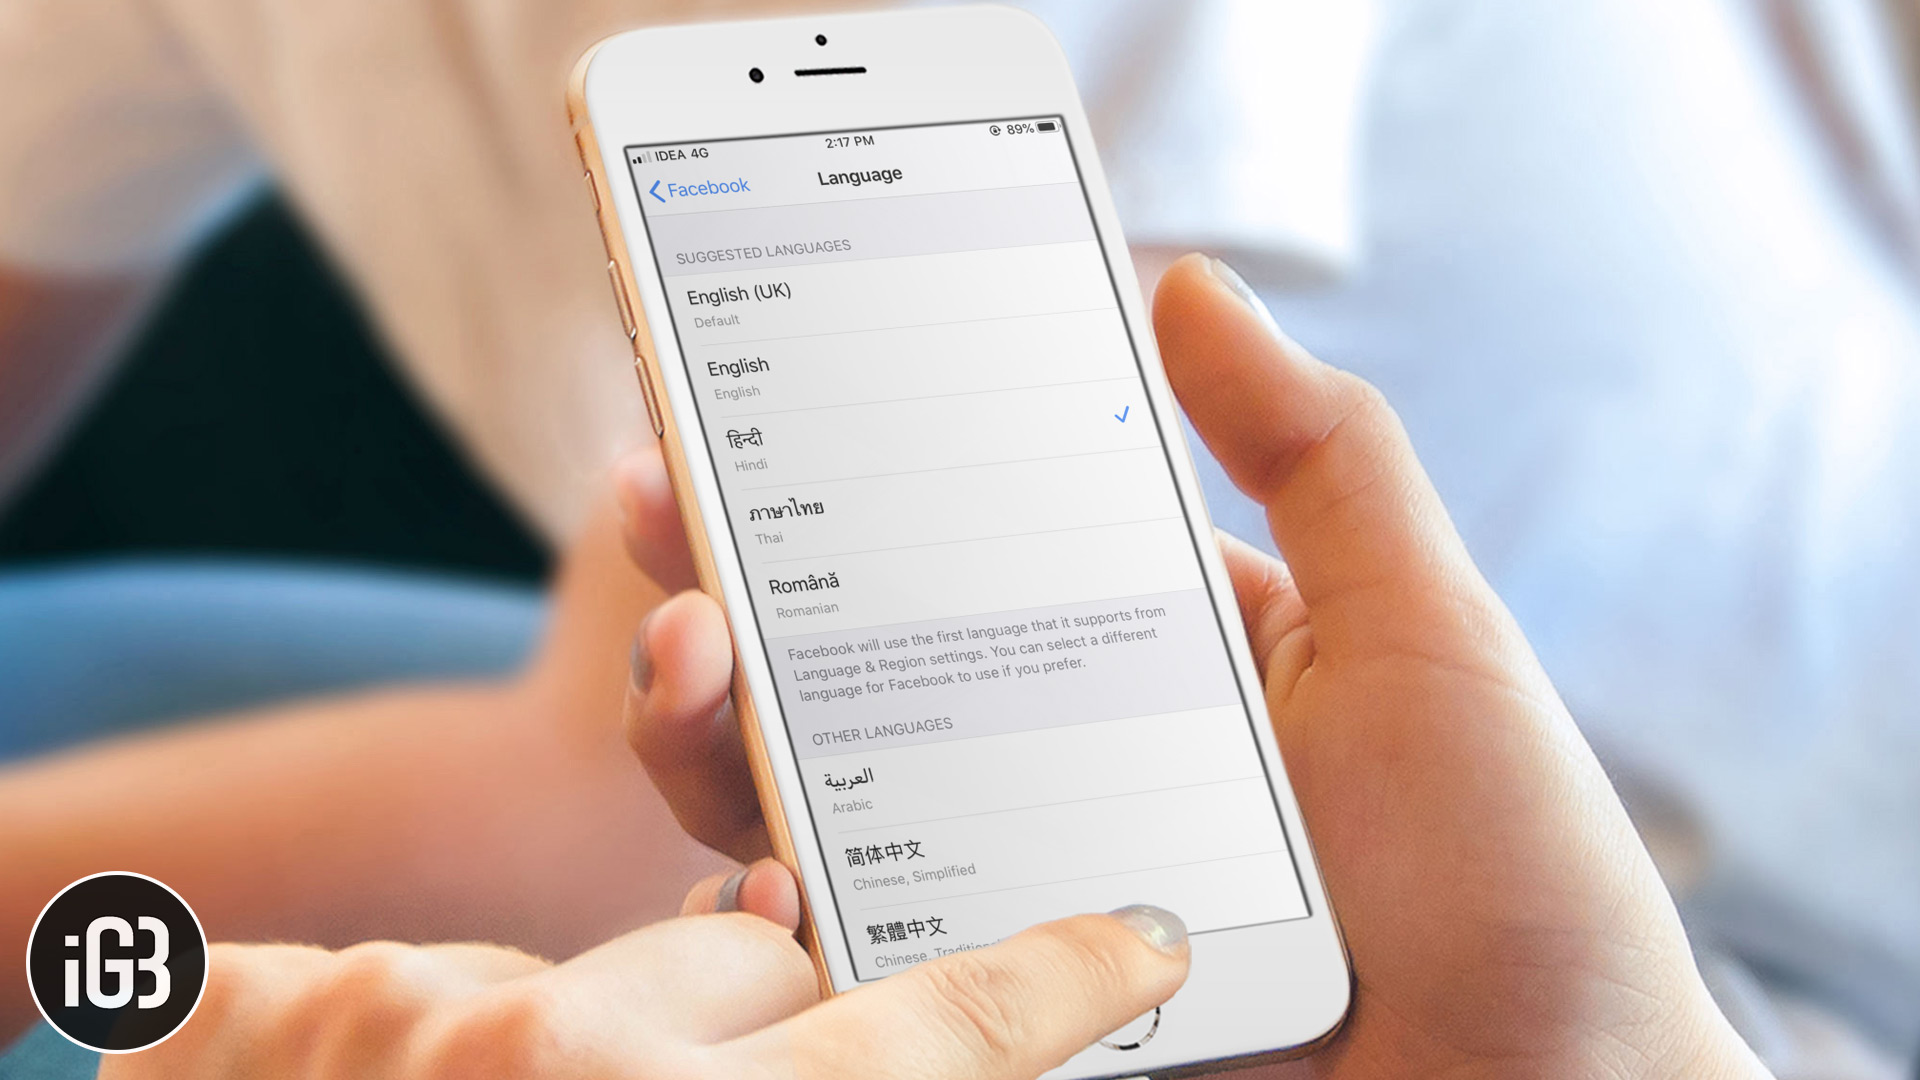 كيفية تغيير لغة تطبيقات معينة في iOS 13 على iPhone أو iPad